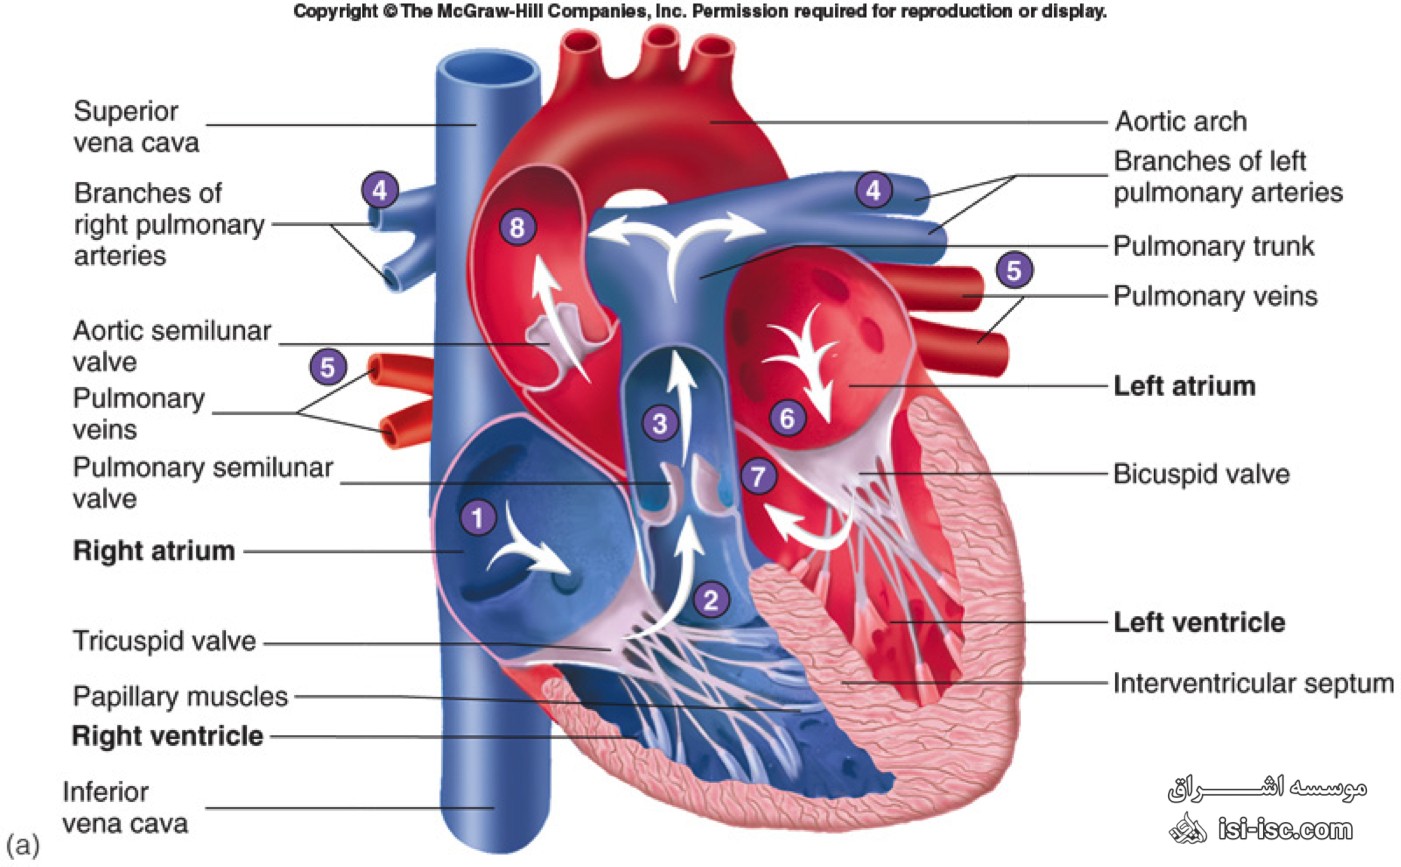 لیست نشریات معتبر آی اس ای (ISI) سیستم های قلبی و قلبی